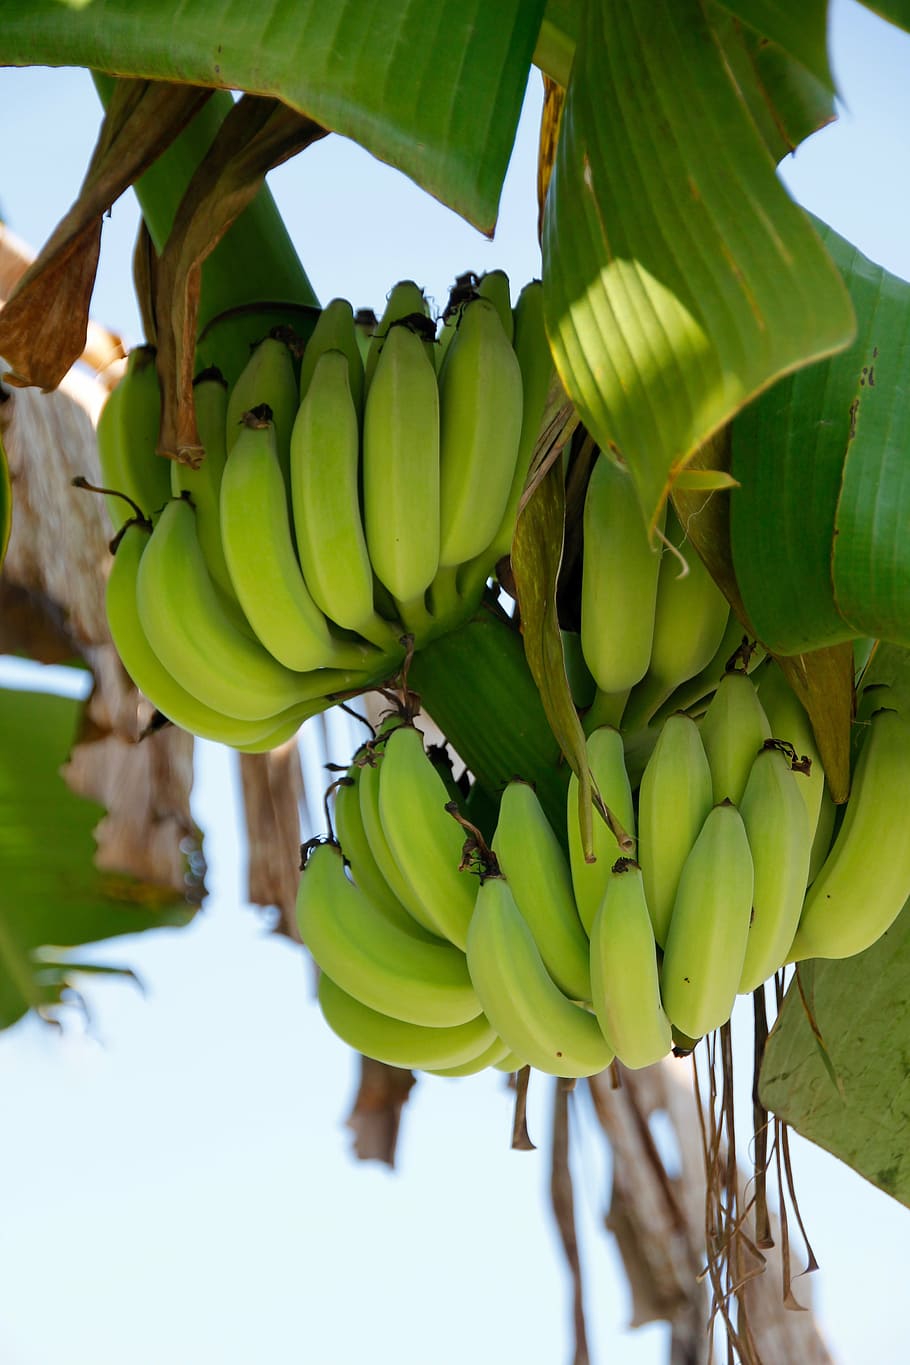 관목, 바나나, 바나나 식물, 과일, 줄기, 바나나 나무, 산부인과, 열대의, 바나나 관목, 작은 바나나